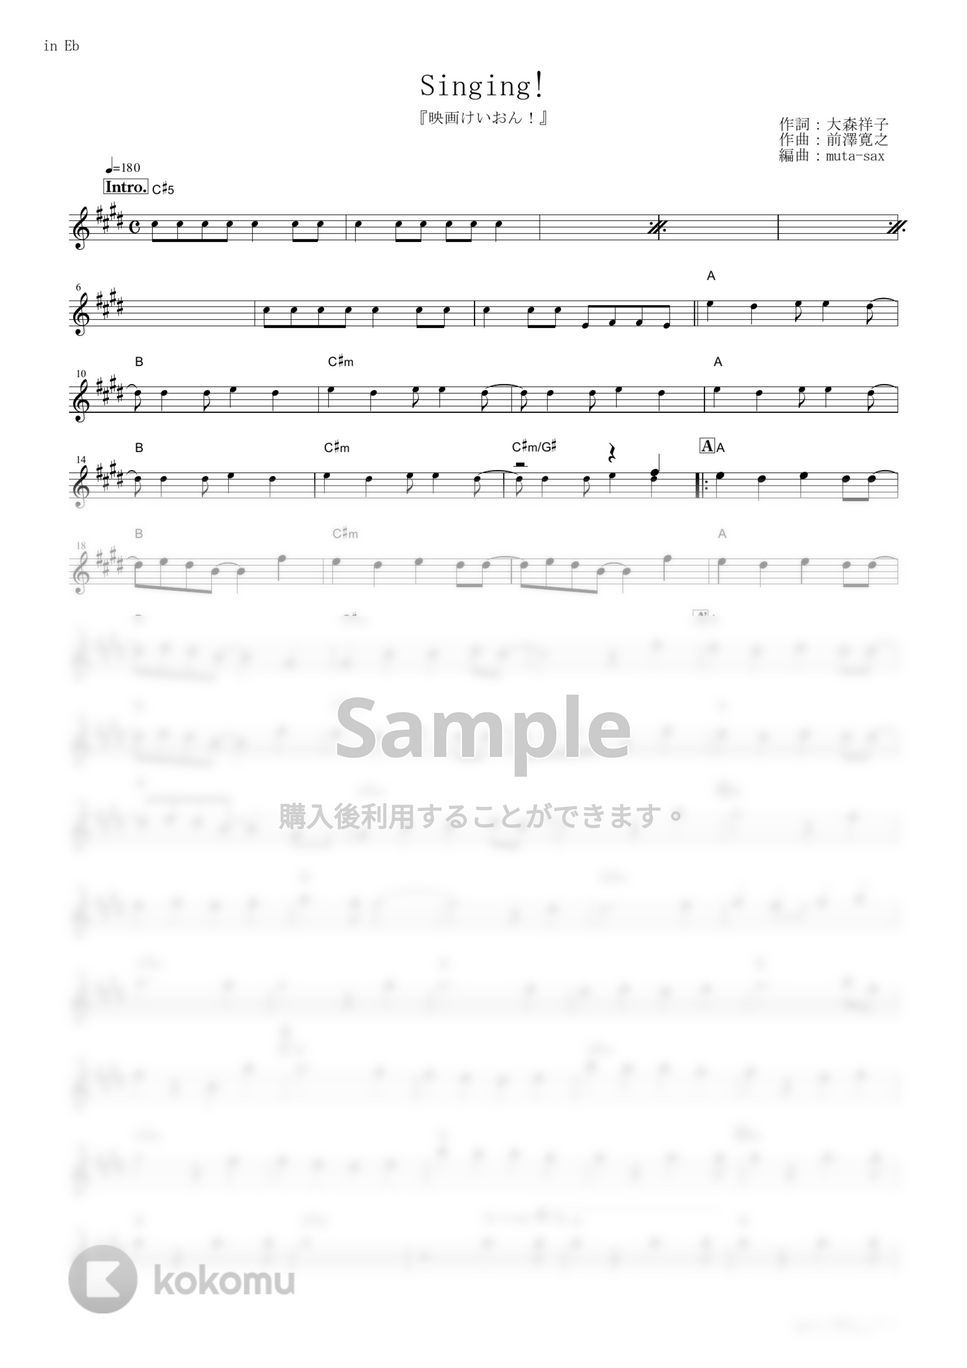 放課後ティータイム - Singing! (『映画けいおん！』 / in Eb) by muta-sax